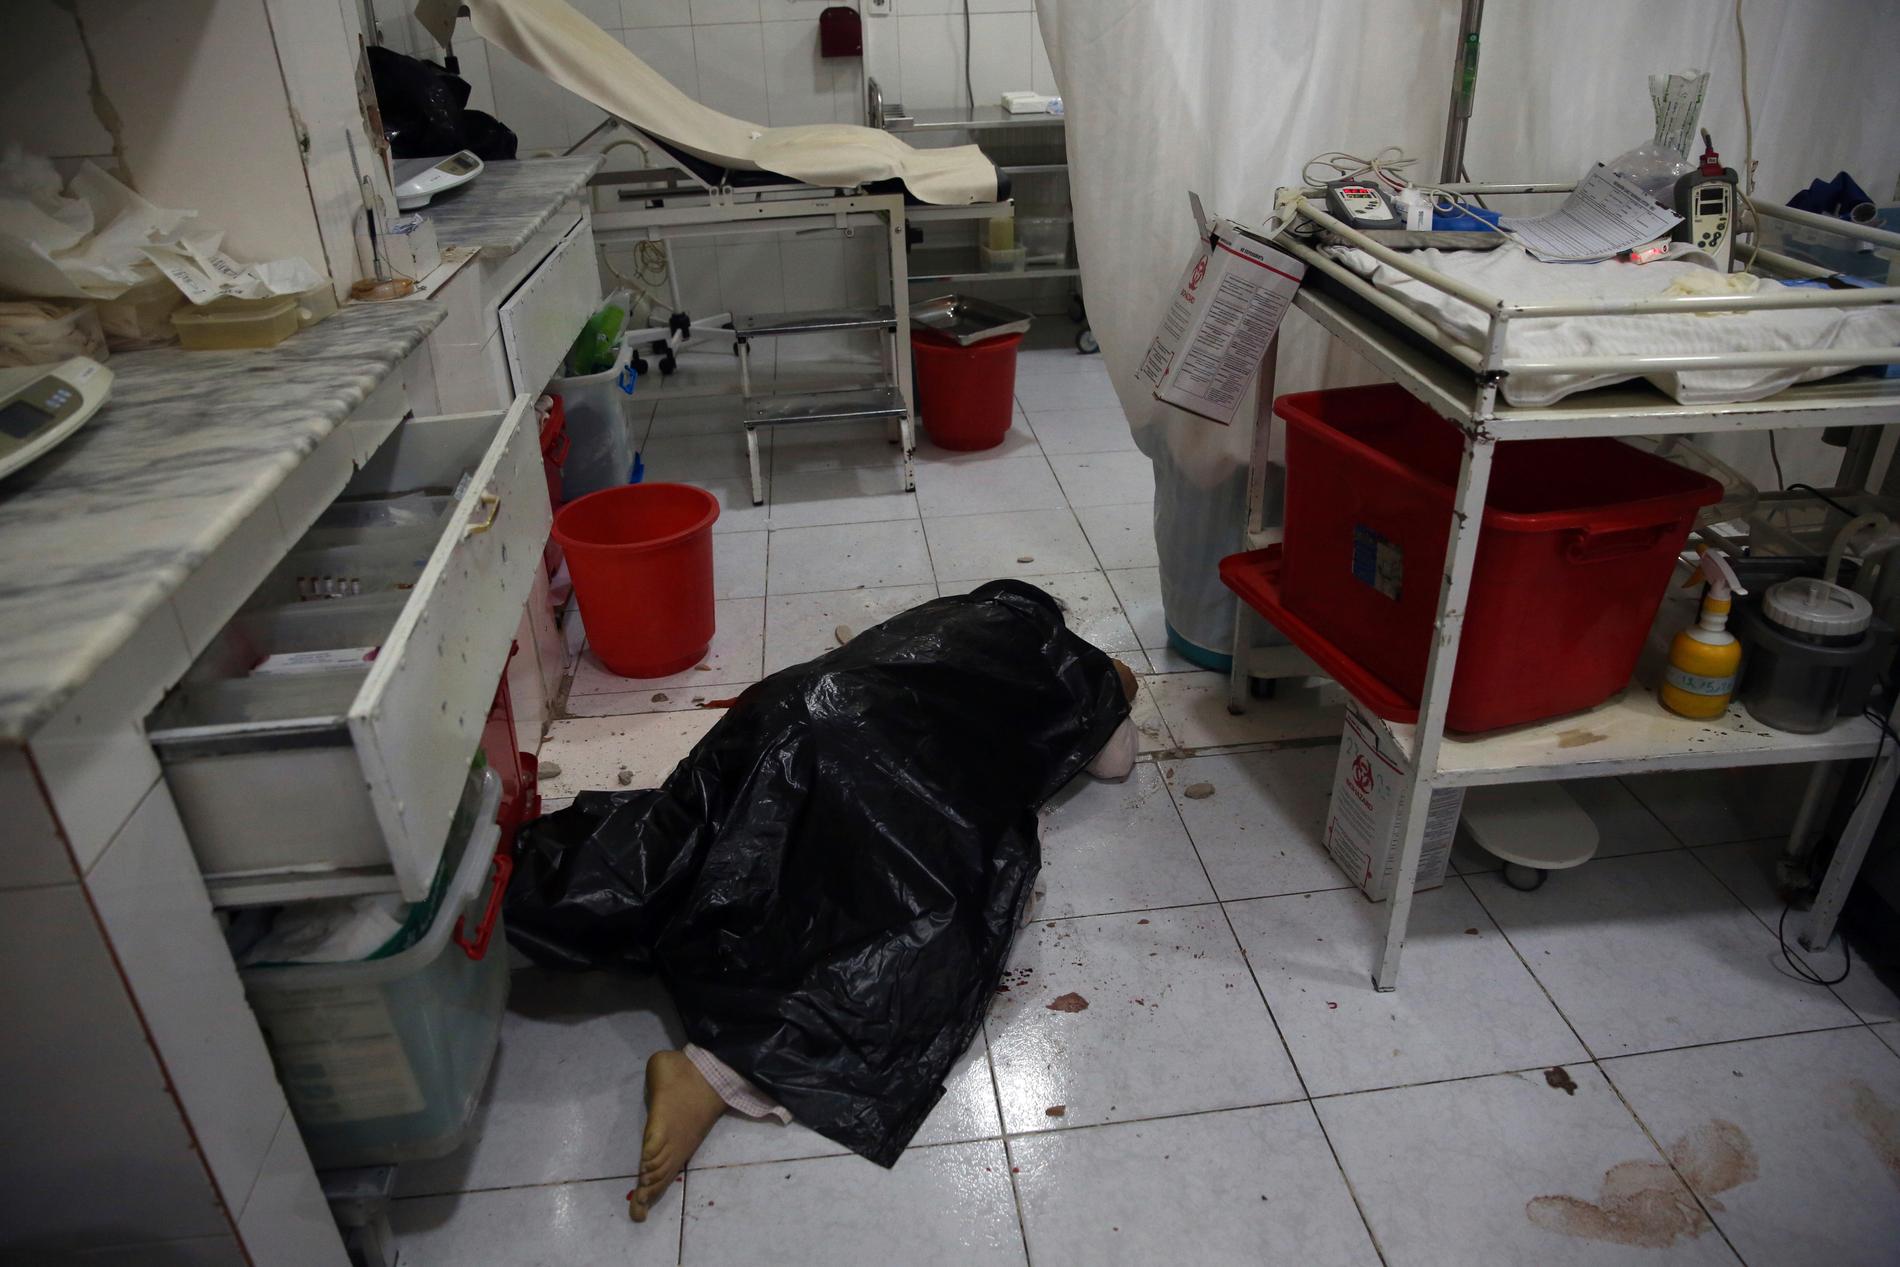 16 mennesker ble drept, blant dem kvinner og barn, i et terrorangrep mot et sykehus i Afghanistans hovedstad Kabul tirsdag. Et av ofrene ble drept i fødestuen. 